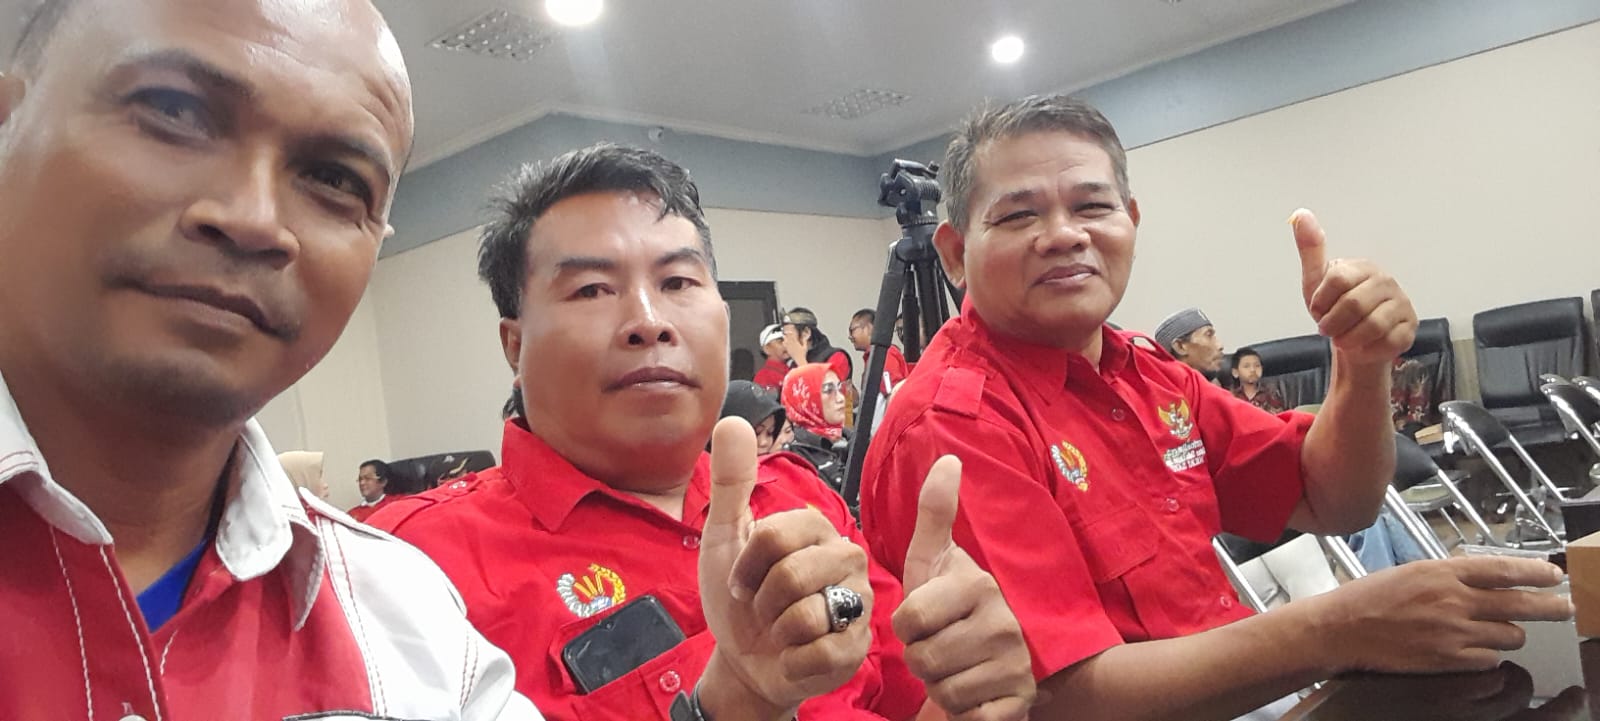 Ketua DPC PWRI Kabupaten Bekasi Erwin Sugandi Ucapkan Selamat Atas Dilantiknya DPC PWRI Kabupaten Tasikmalaya